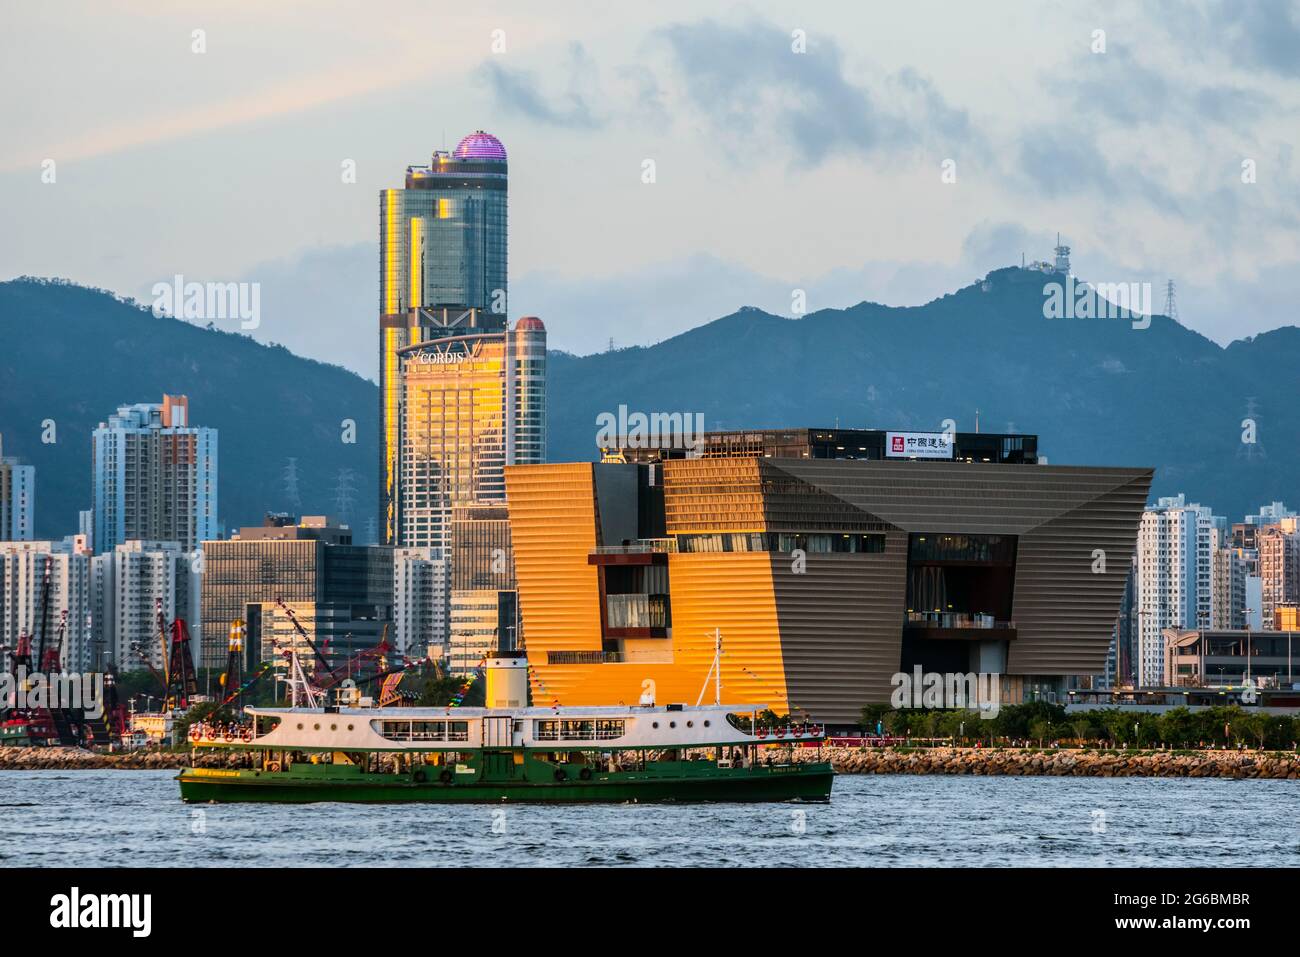 Le Musée du Palais de Hong Kong, quartier culturel de West Kowloon, sera développé en un des plus grands quartiers culturels du monde, mêlant art, edu Banque D'Images